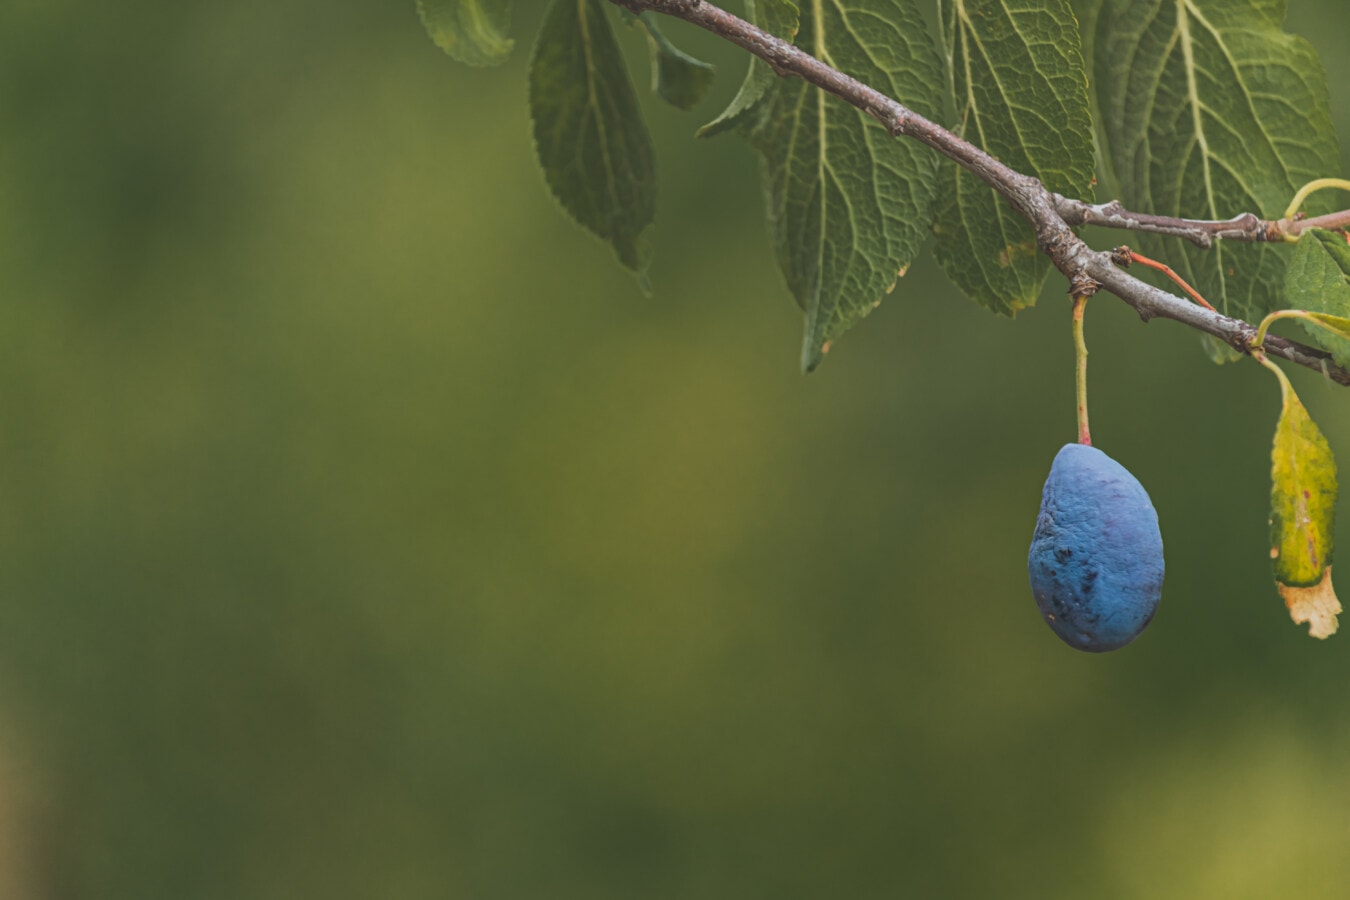 plum, blue, tree, hanging, branchlet, fruit tree, nature, fruit, sport, leaf